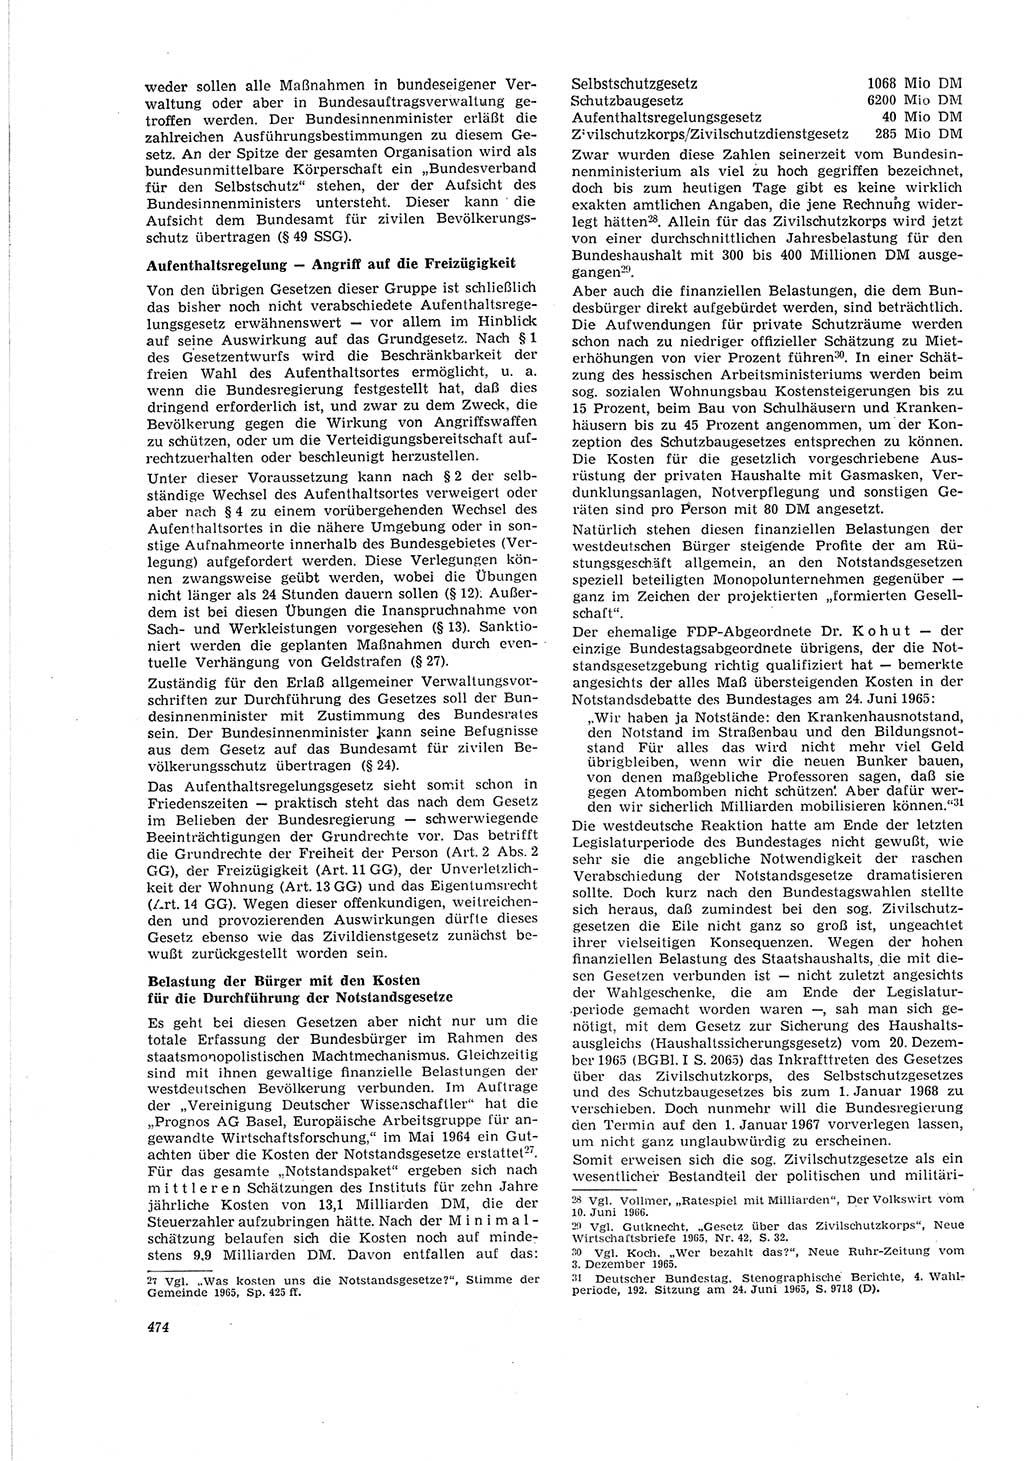 Neue Justiz (NJ), Zeitschrift für Recht und Rechtswissenschaft [Deutsche Demokratische Republik (DDR)], 20. Jahrgang 1966, Seite 474 (NJ DDR 1966, S. 474)